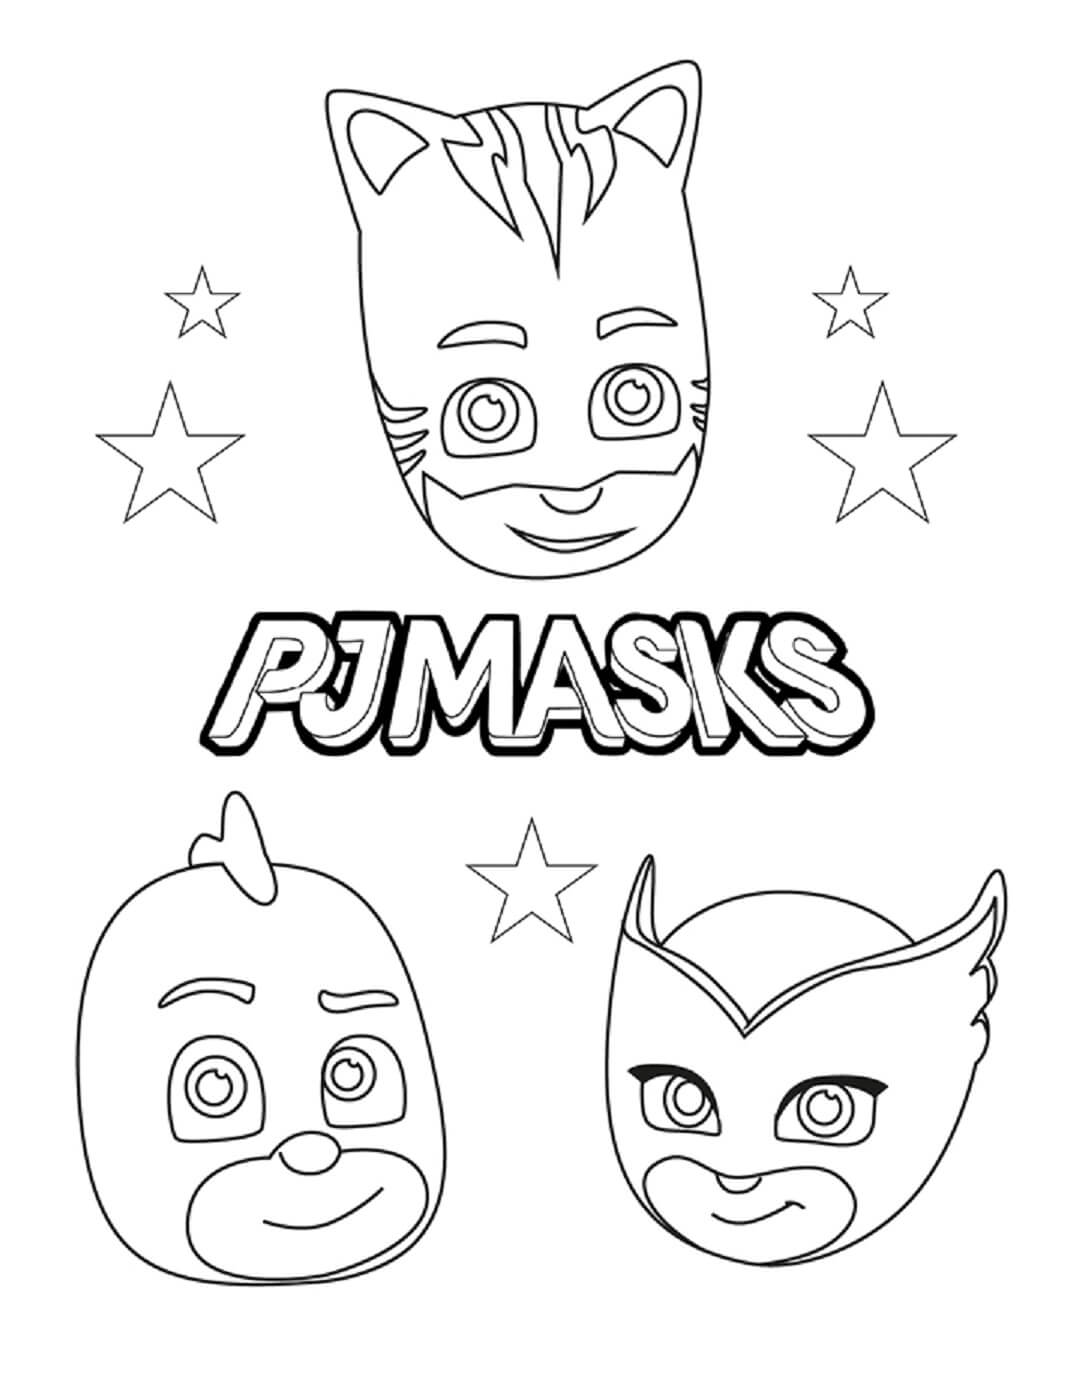 Máscaras PJ coloring pages